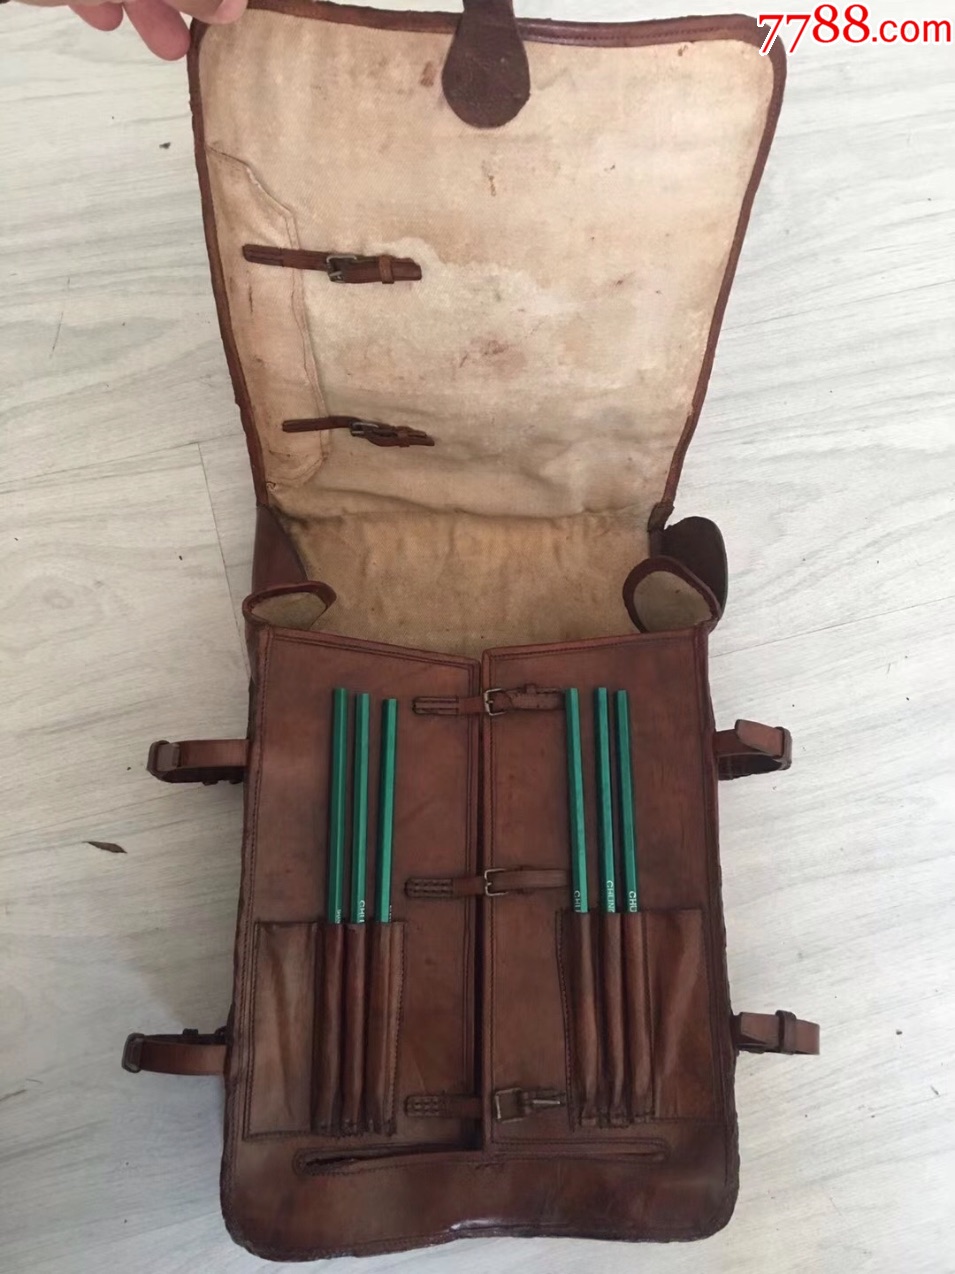 二战侵华时期日军鬼子使用过的图囊背包